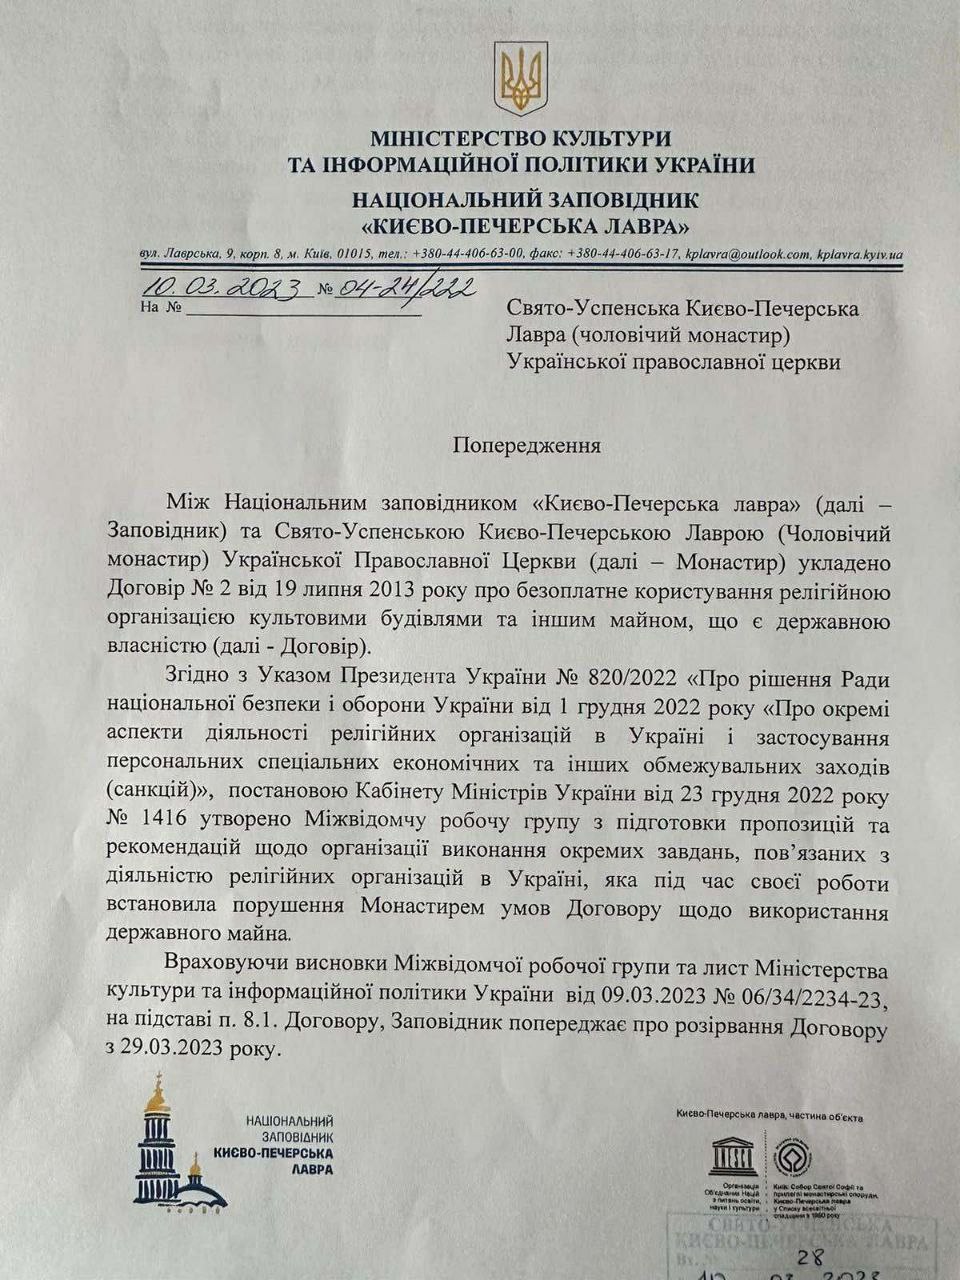 Попов УПЦ МП обязали покинуть территорию Киево-Печерской лавры до 29 марта